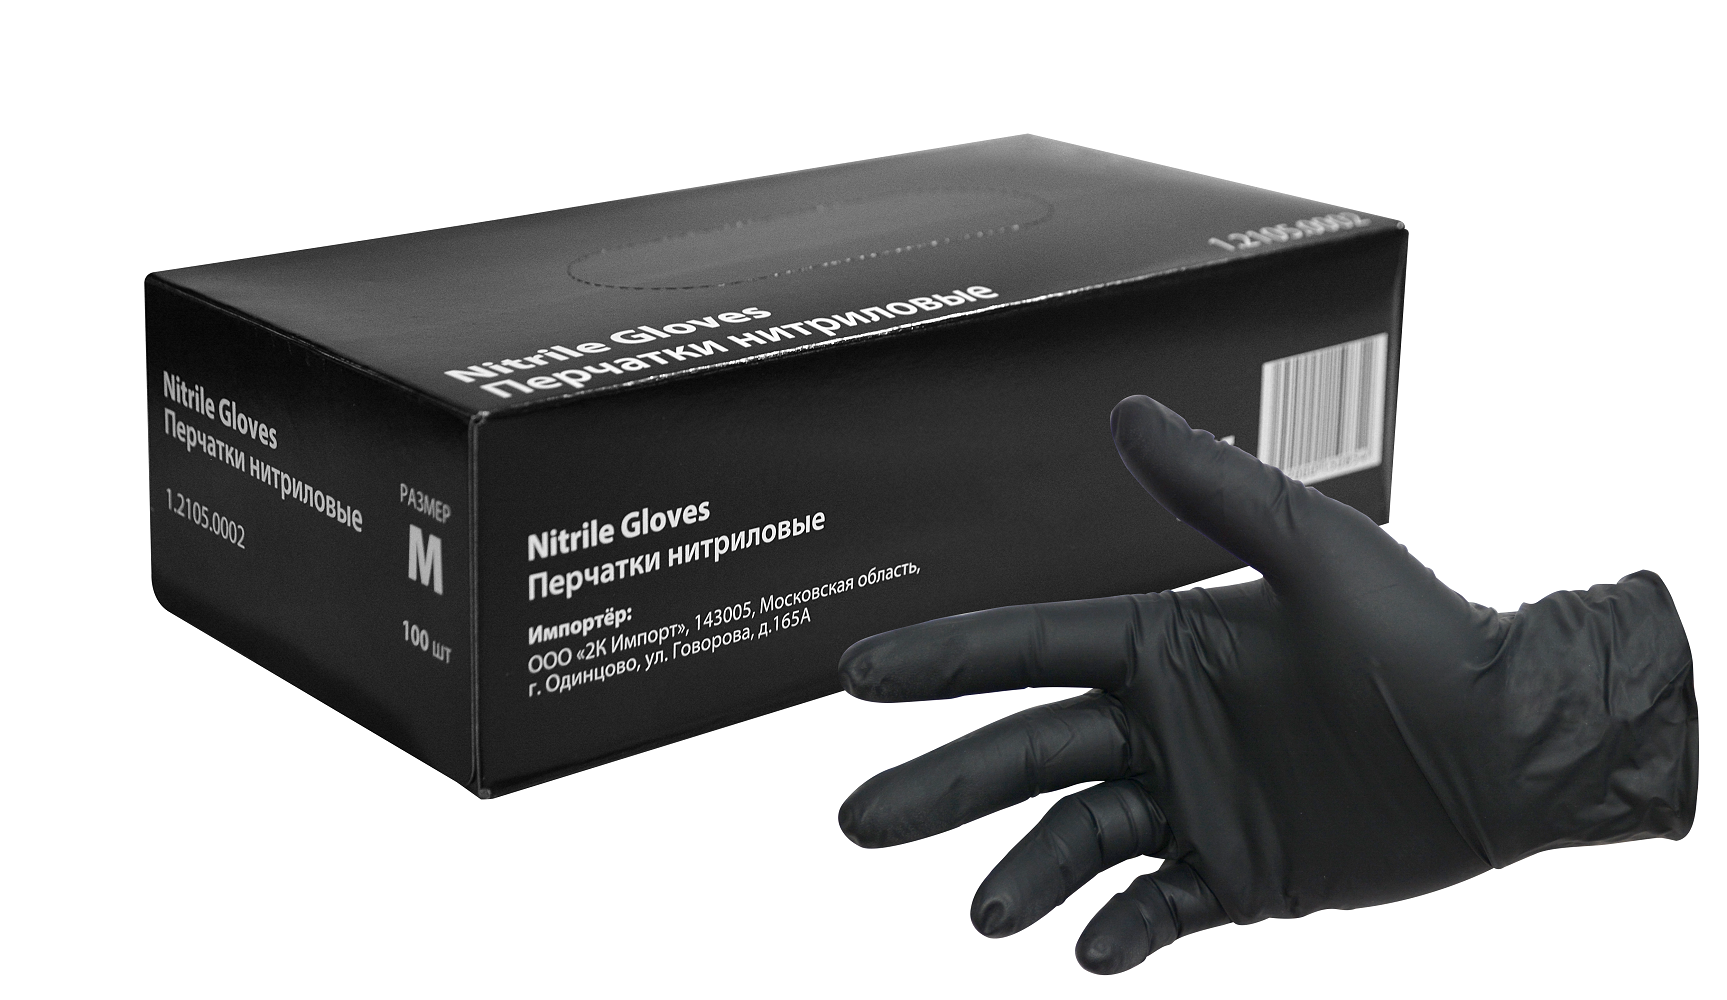 Перчатки нитриловые черные INTERCOLOR 60 мкм размер M (100 шт.) перчатки медицинские нитрил текстур на пальцах сиреневые benovy xs 50 пар